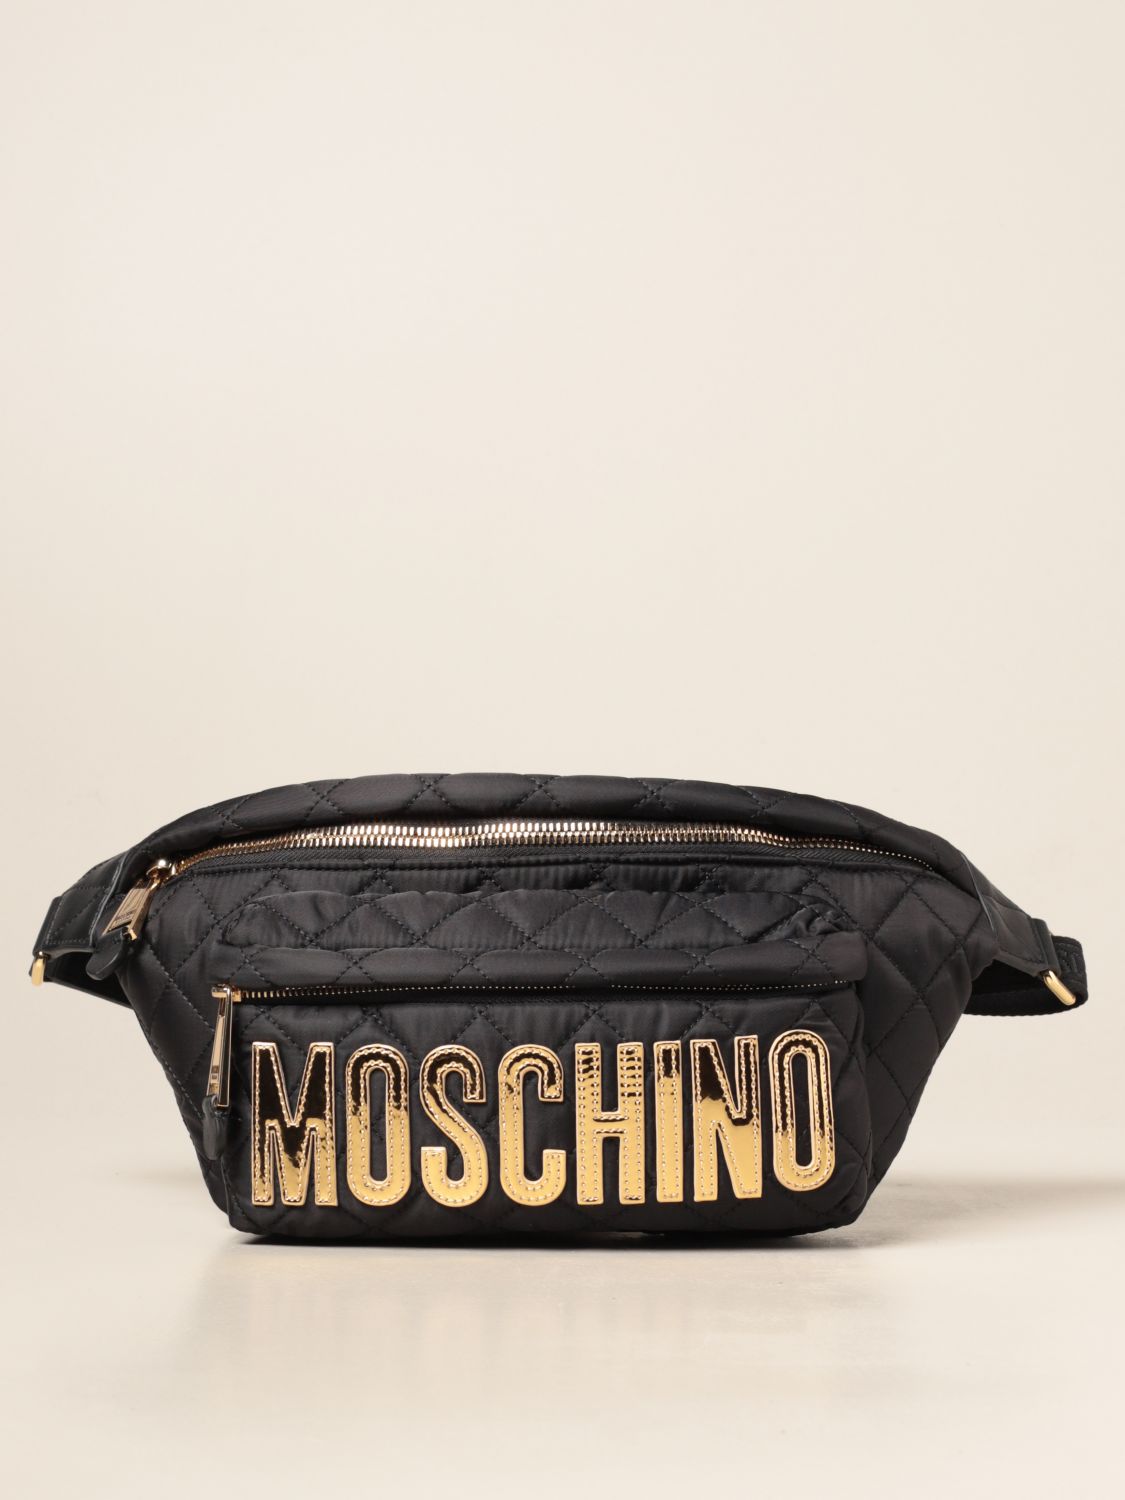 Mini Bag Moschino Couture 7701 8201 